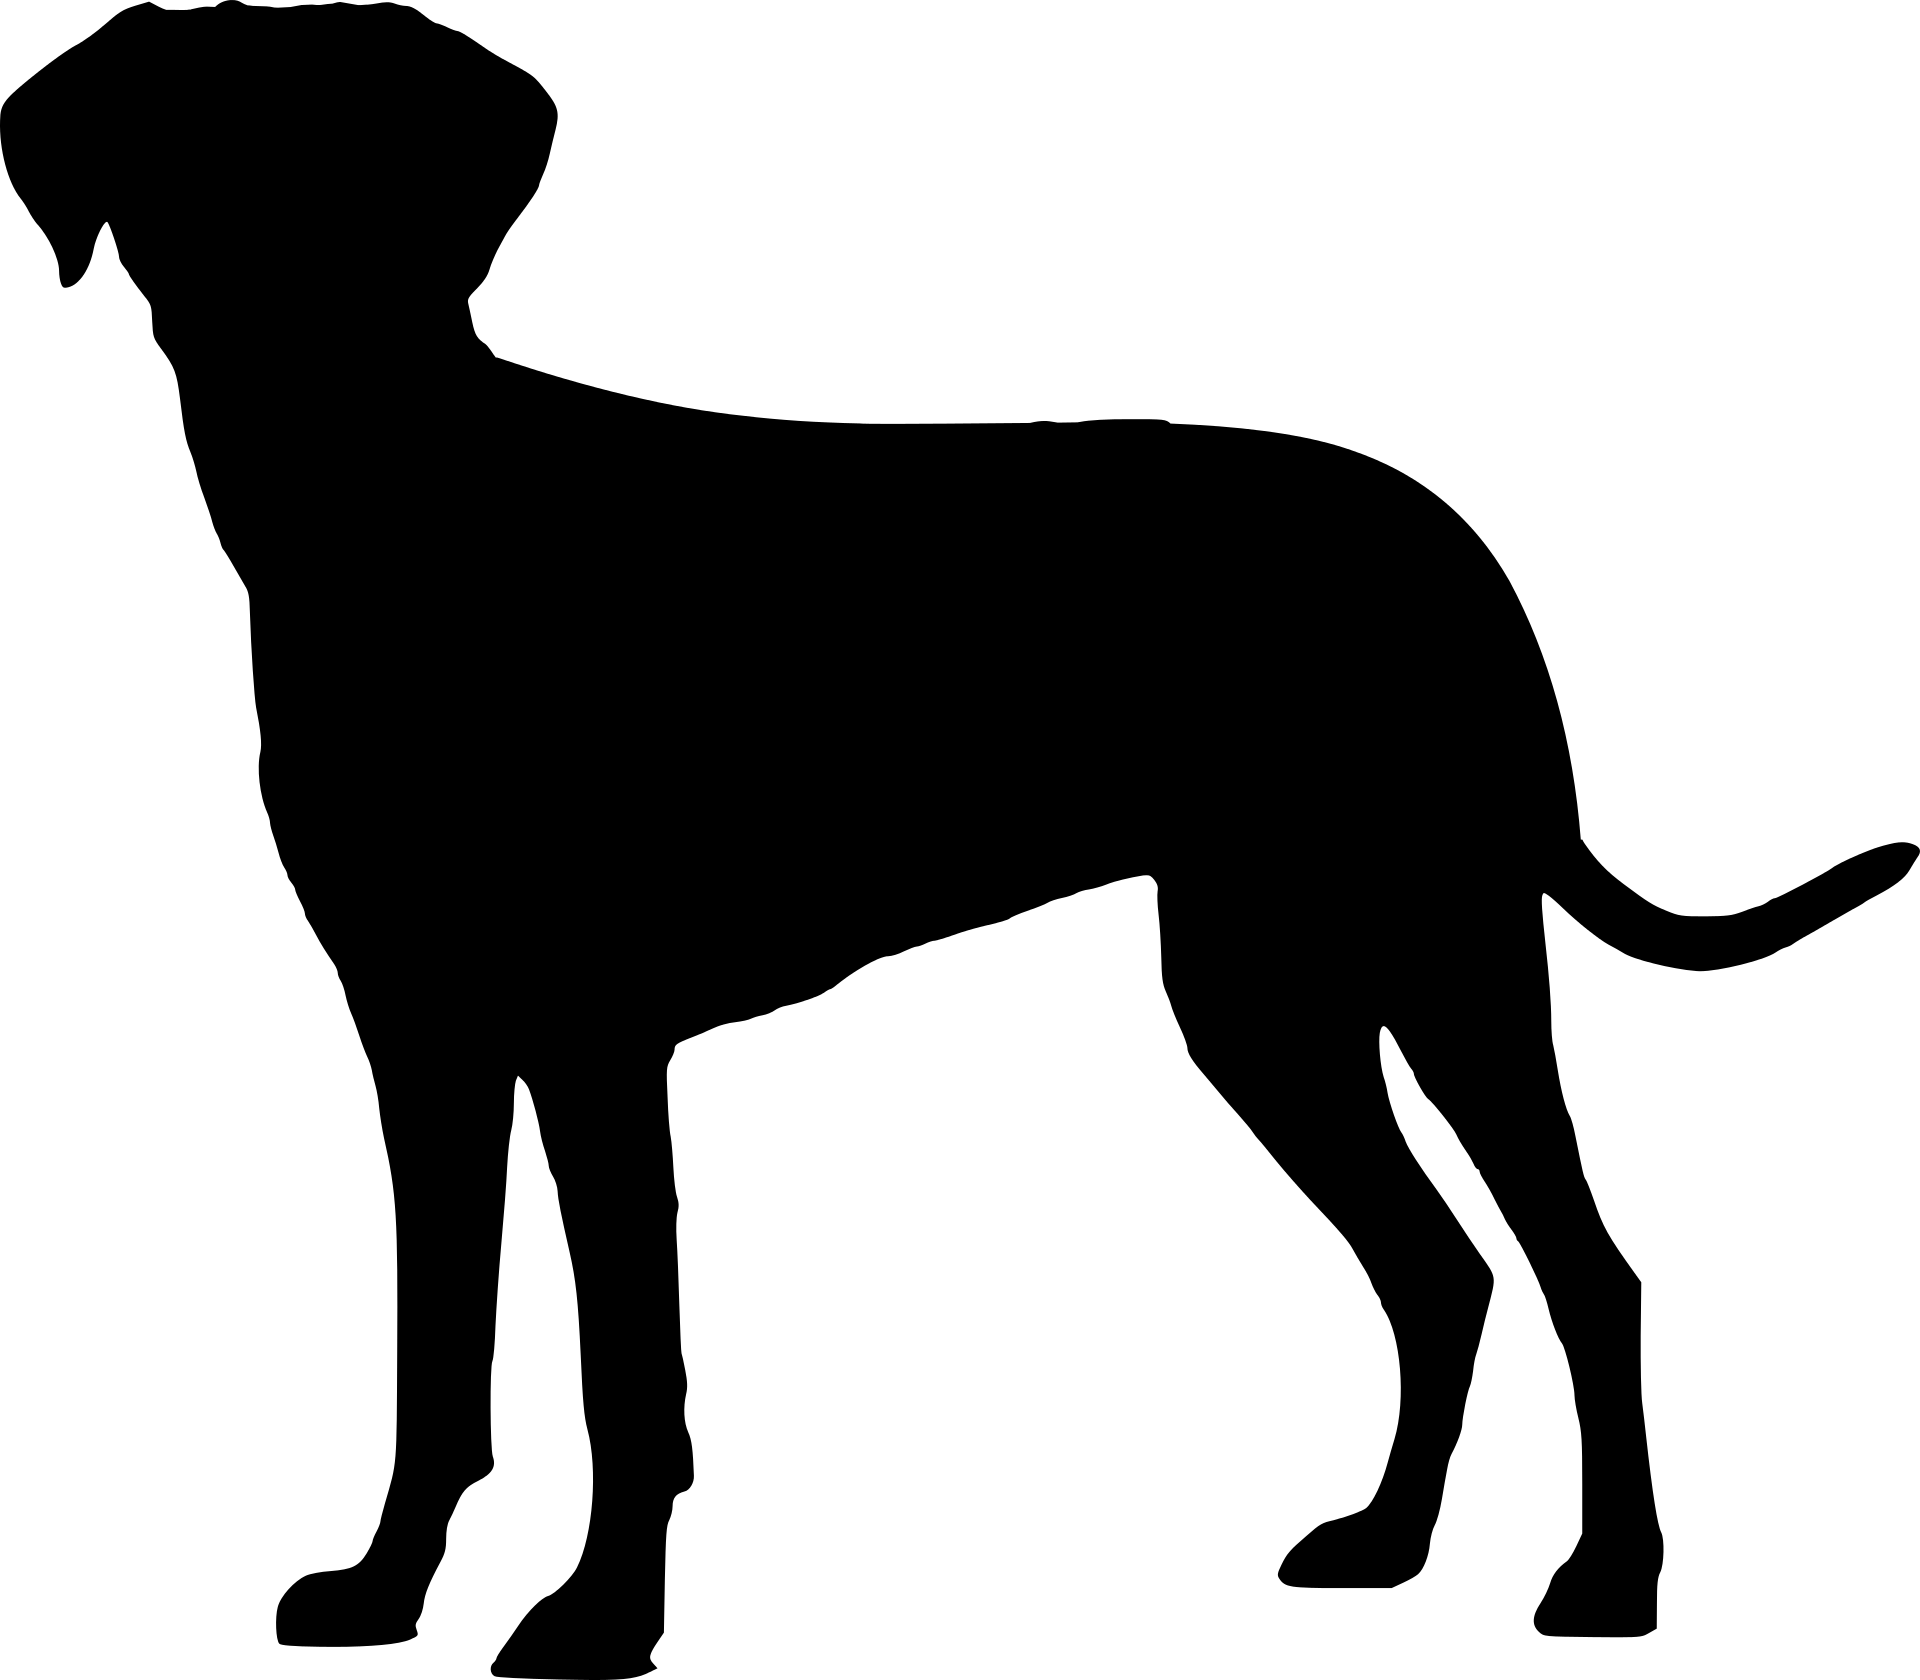 Silhouette - Silueta De Perro Png (1920x1680)